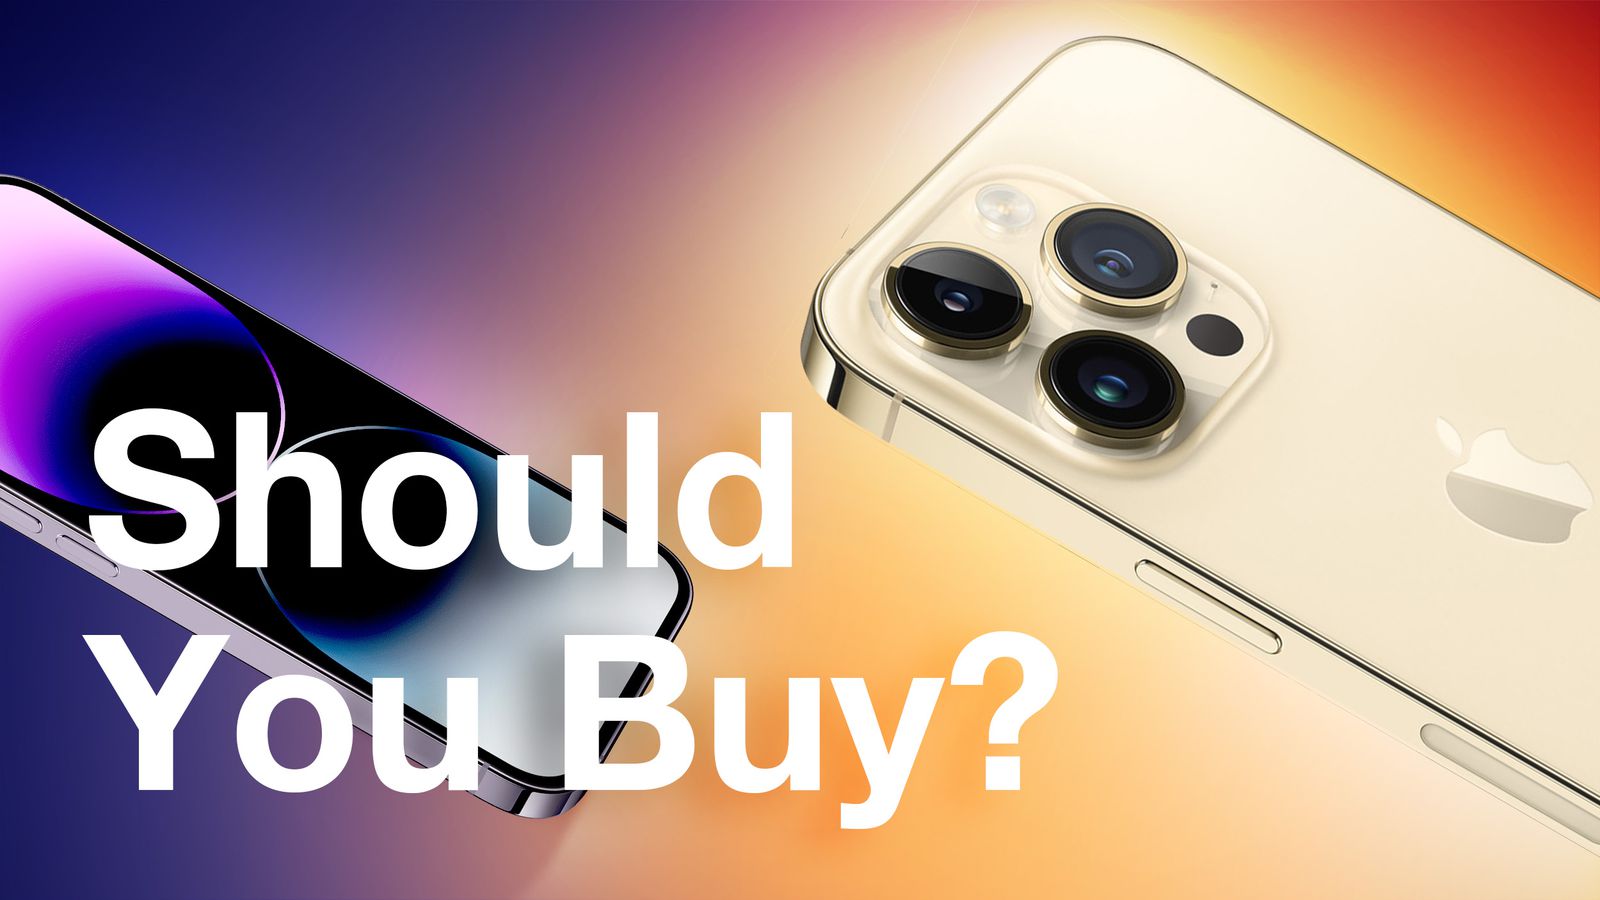 https://images.macrumors.com/t/E6VwwaBQeYsSobJqcAsaKQ4Xu1c=/1600x0/article-new/2023/09/iPhone-14-Pro-Should-You-Buy-2.jpg